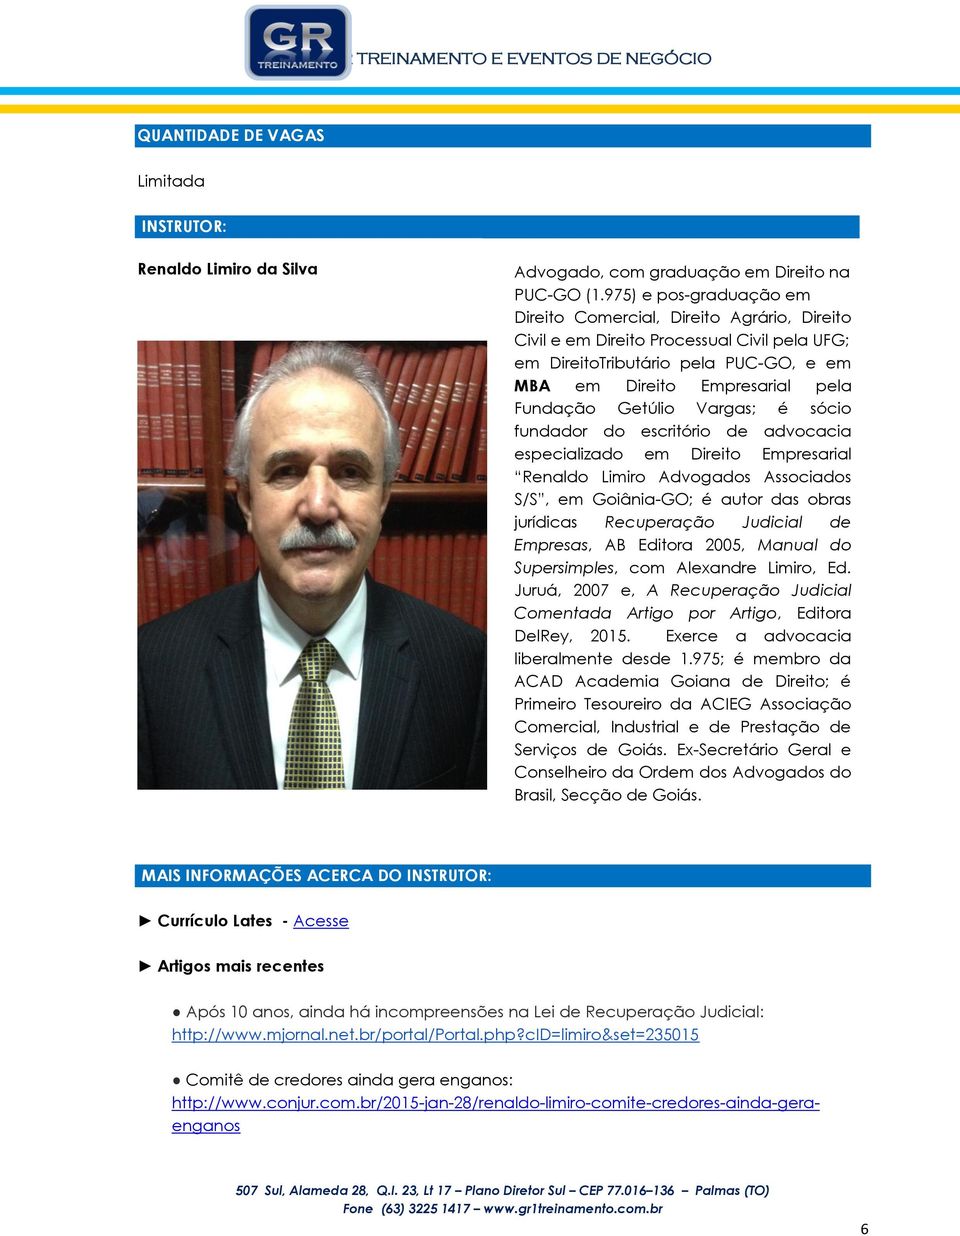 Getúlio Vargas; é sócio fundador do escritório de advocacia especializado em Direito Empresarial Renaldo Limiro Advogados Associados S/S, em Goiânia-GO; é autor das obras jurídicas Recuperação